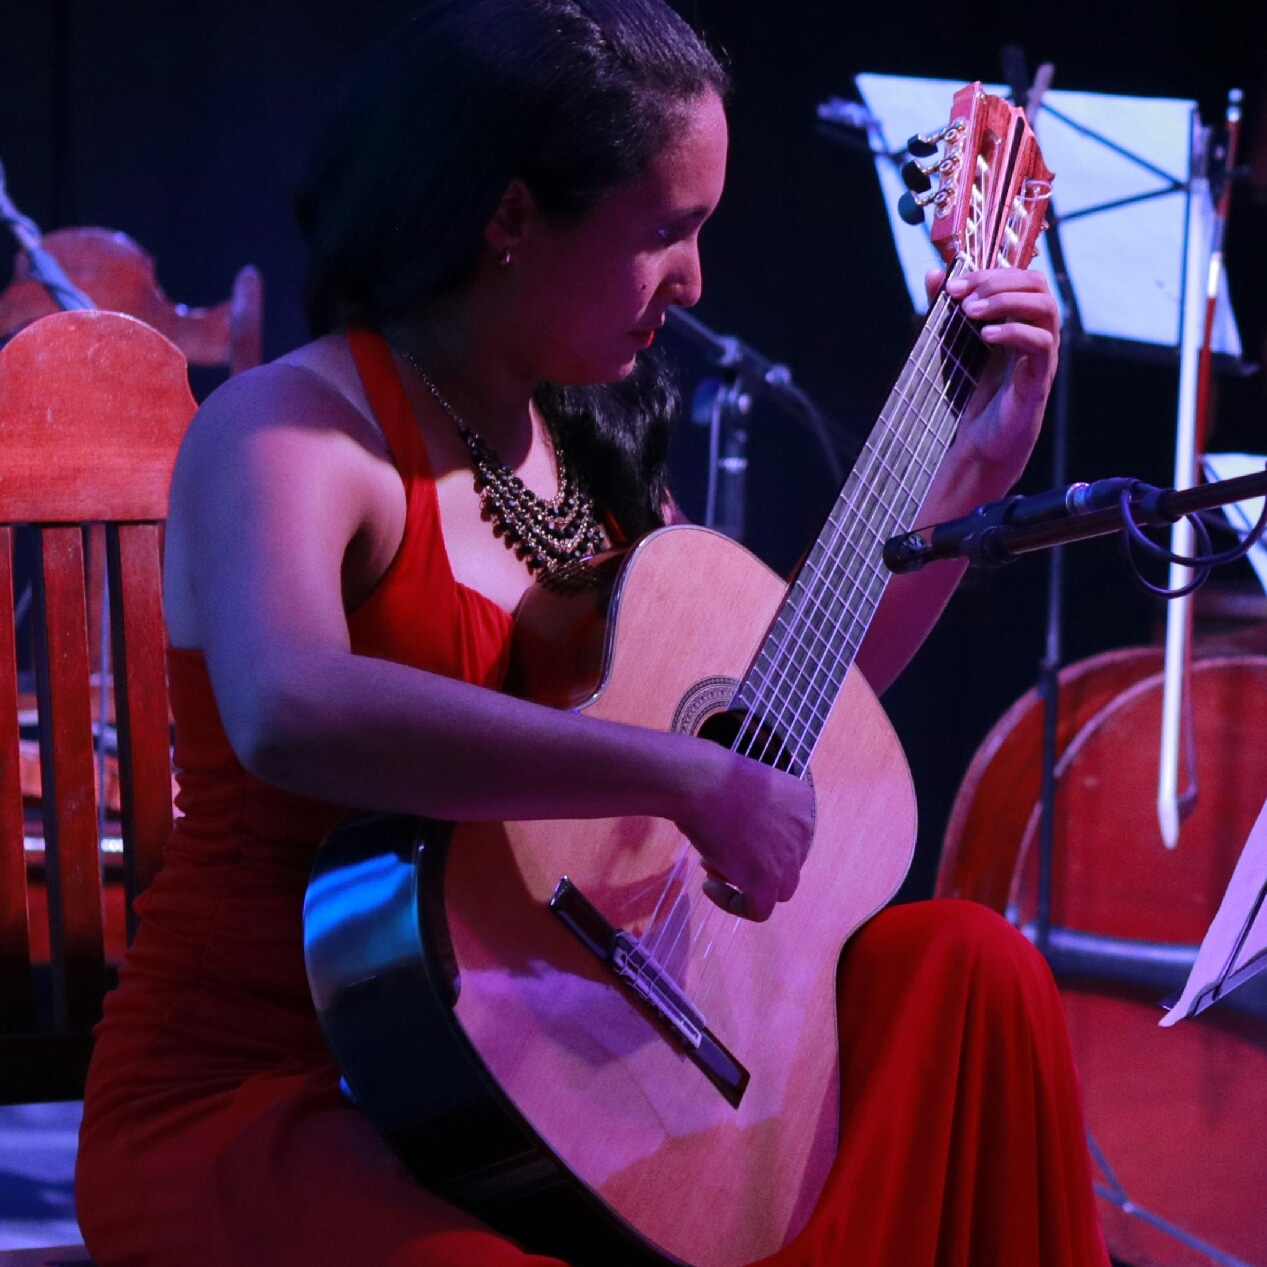 Ariadna Cuéllar es una de las guitarristas jóvenes más reconocidas del país./Foto: Centro de Documentación.